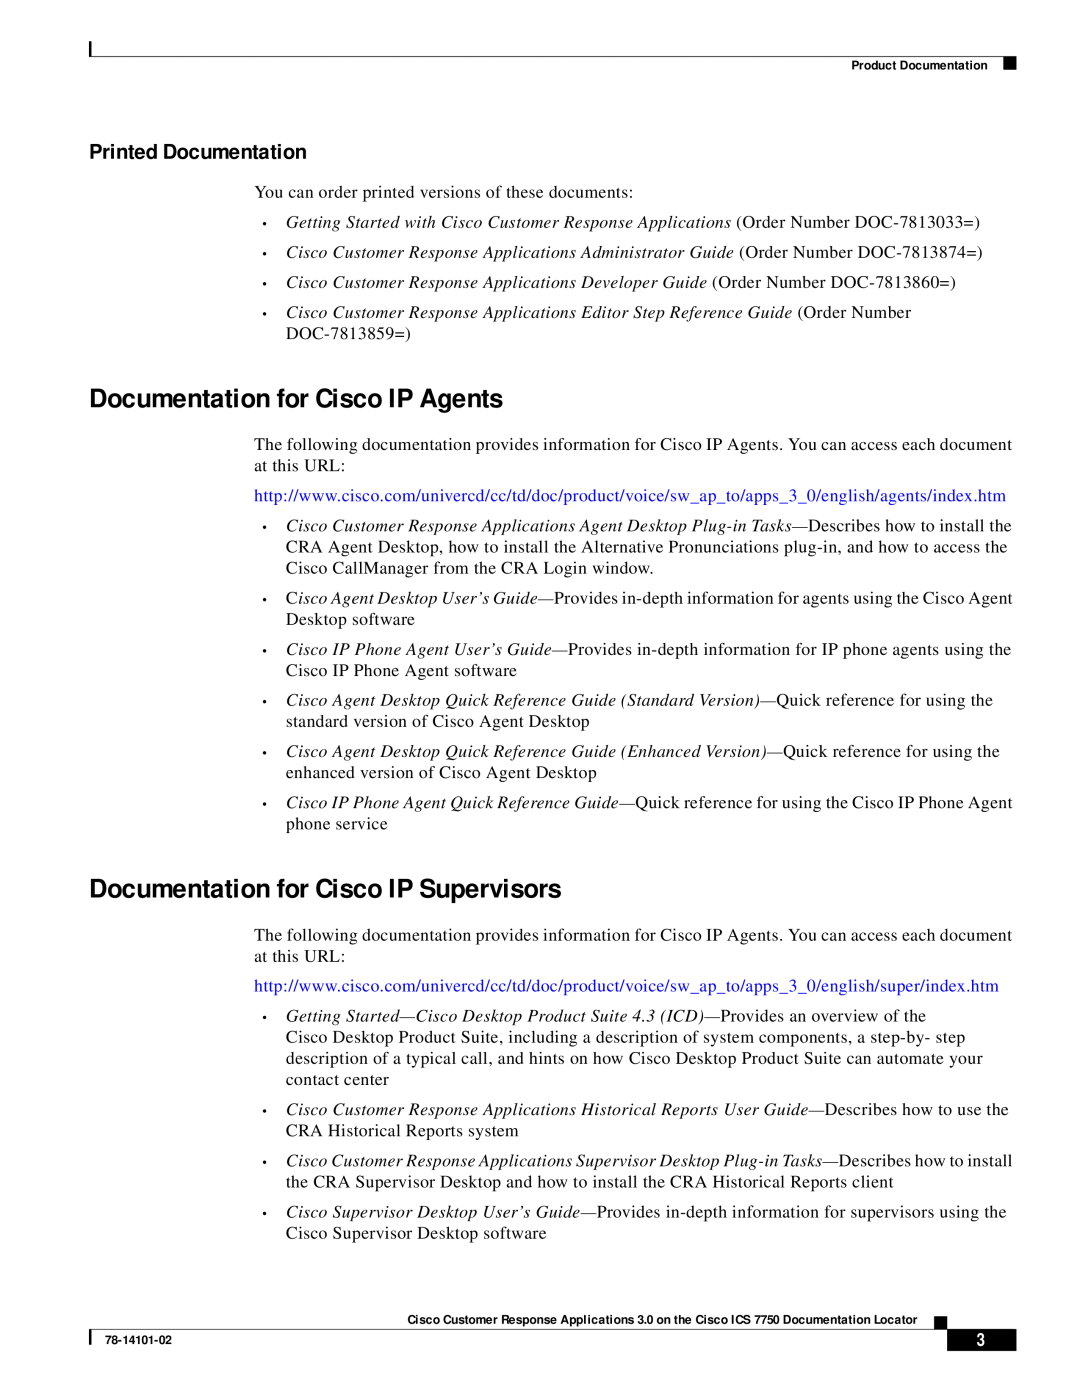 Cisco Systems ICS 7750 Documentation for Cisco IP Agents, Documentation for Cisco IP Supervisors, Printed Documentation 